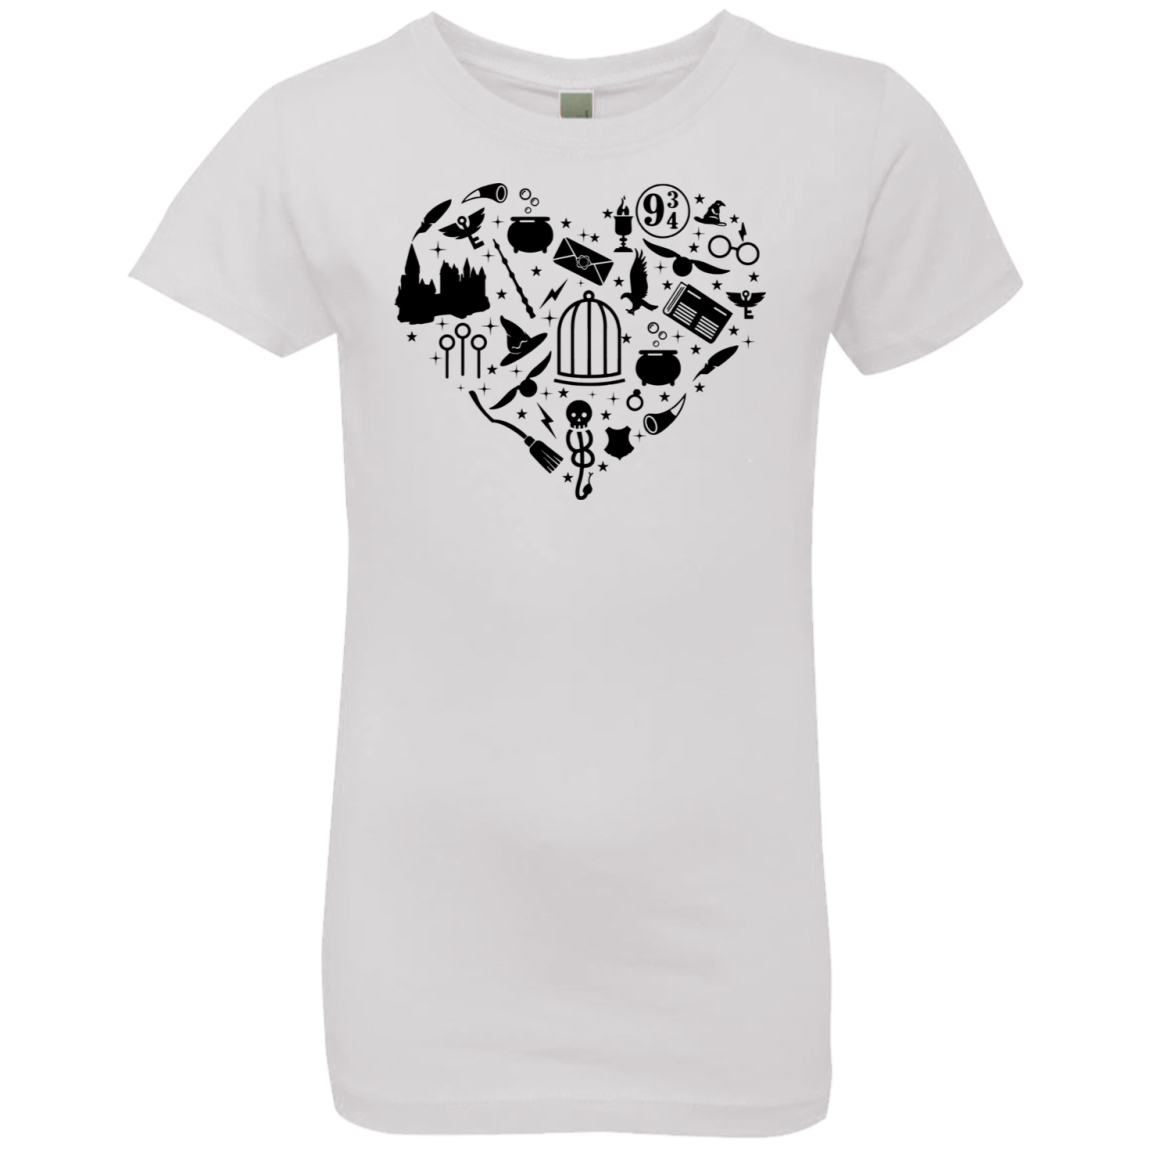 HP Heart Girls' Princess T-Shirt